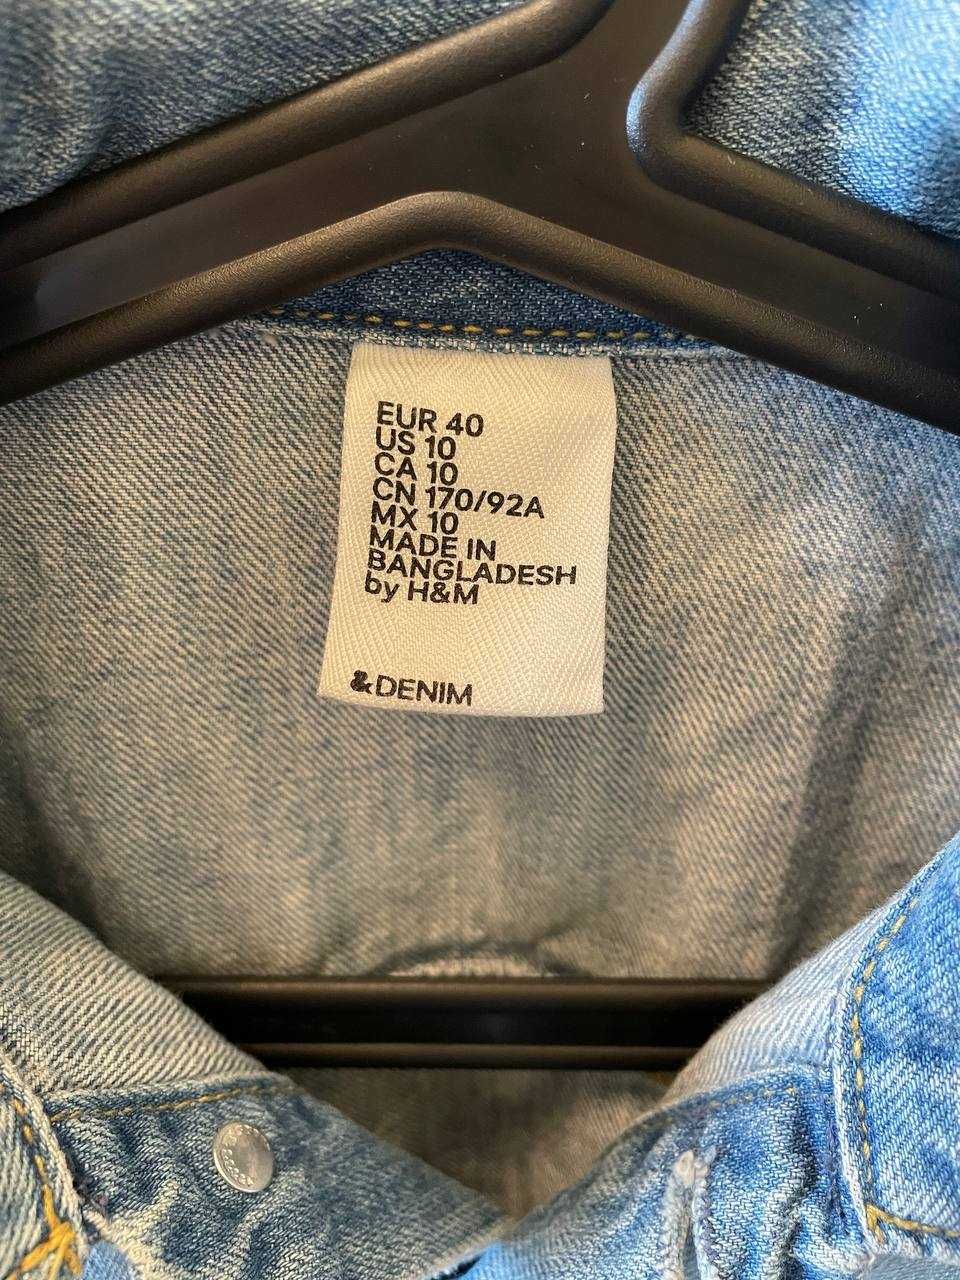 Kurtka jeansowa H&M, eur 40